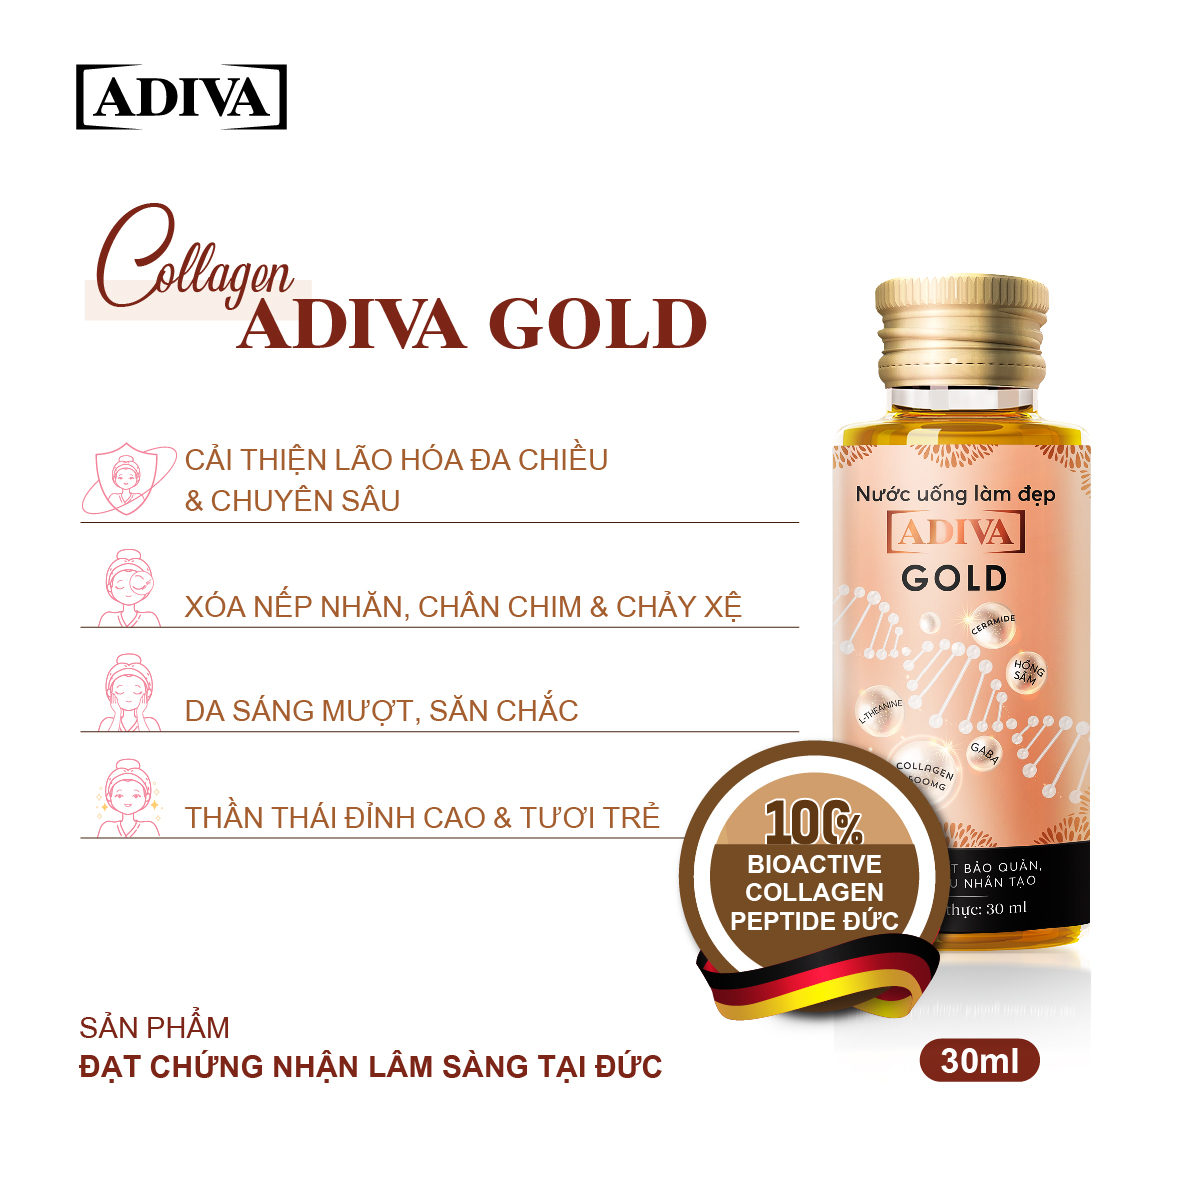 2 Hộp Nước Uống Làm Đẹp Collagen ADIVA Gold (14Chai/ Hộp)- Giúp Làn Da Căng Mịn, Giảm Nếp Nhăn Và Chống Lão Hóa